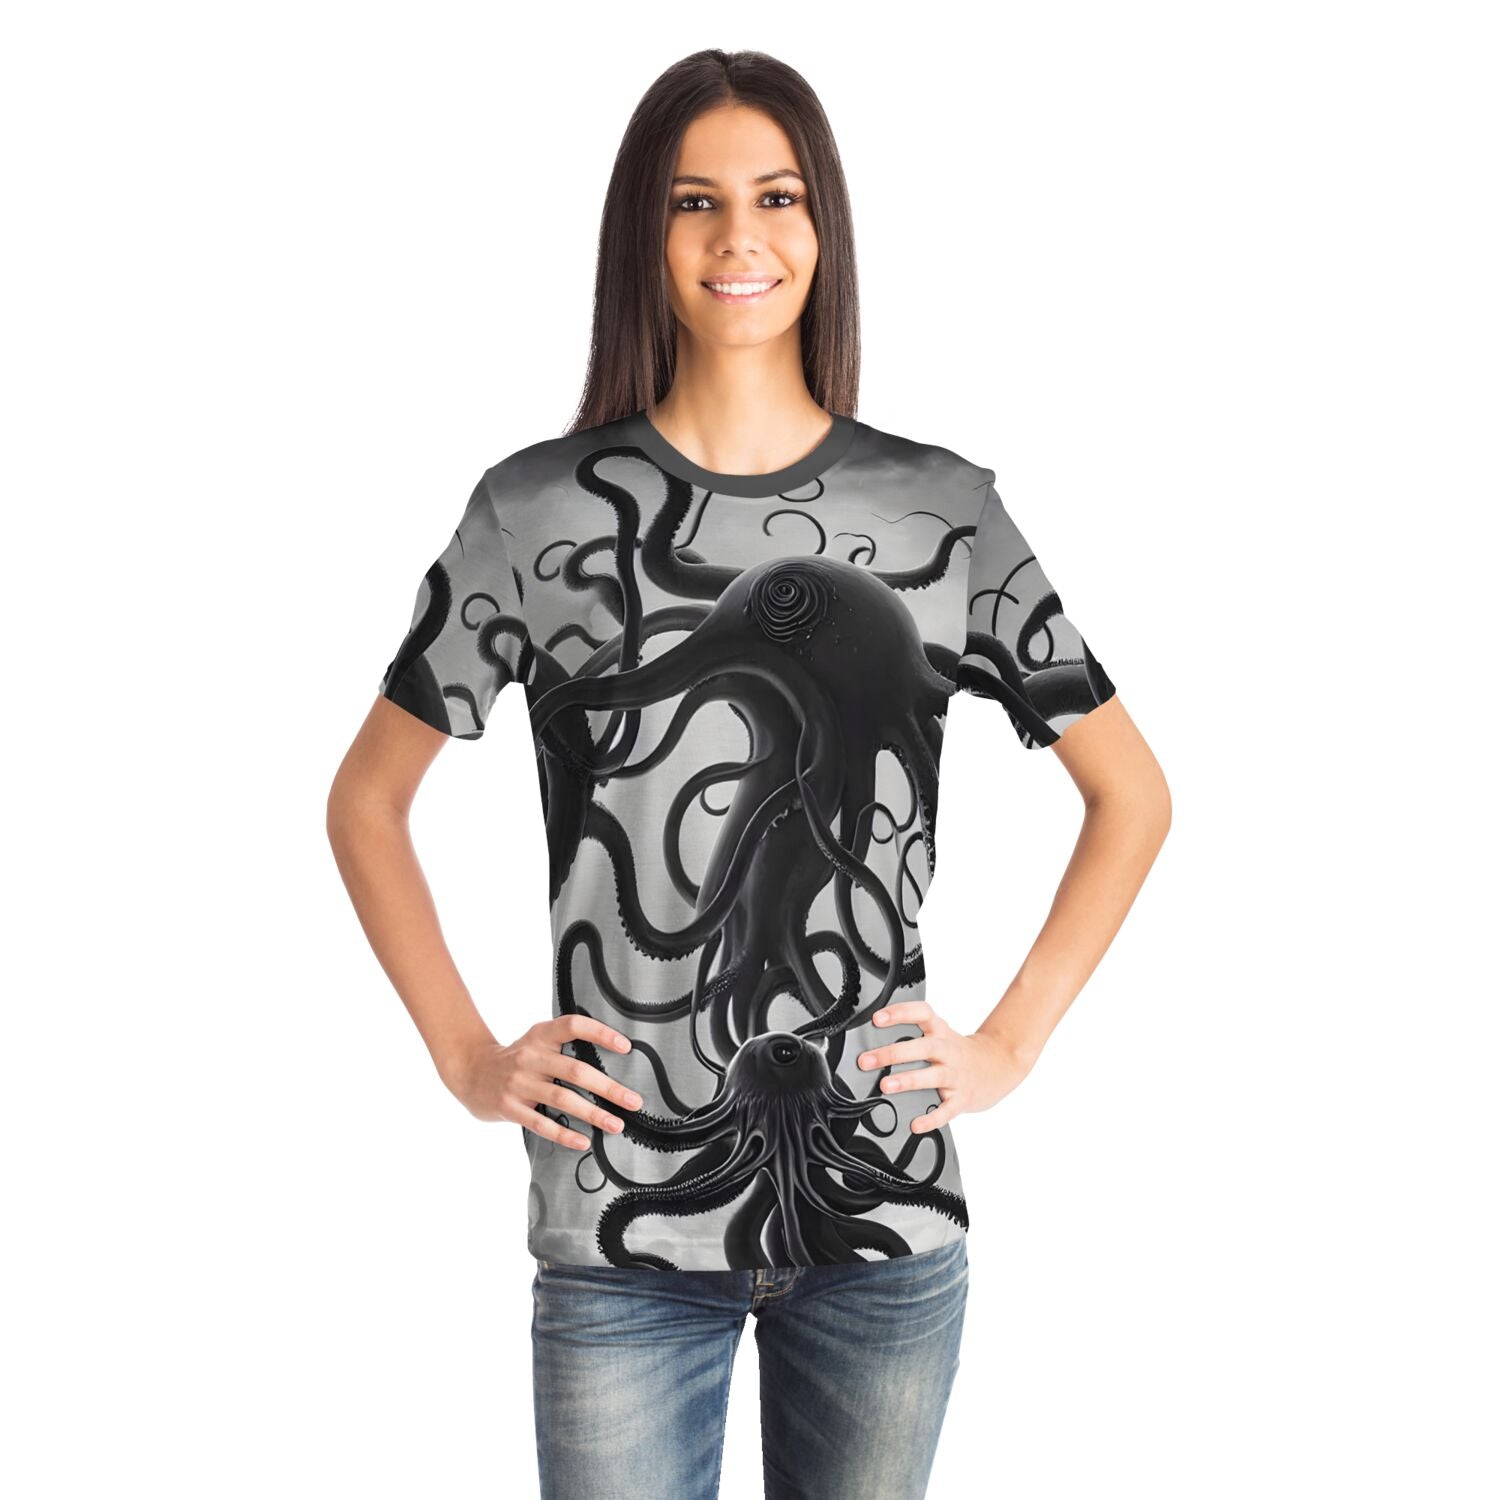 T-shirt Extraterrestrial Octopus Original Art | Alien Invasion, War of the Worlds | Lovecraft Cthulhu | Surreal Art T-Shirt